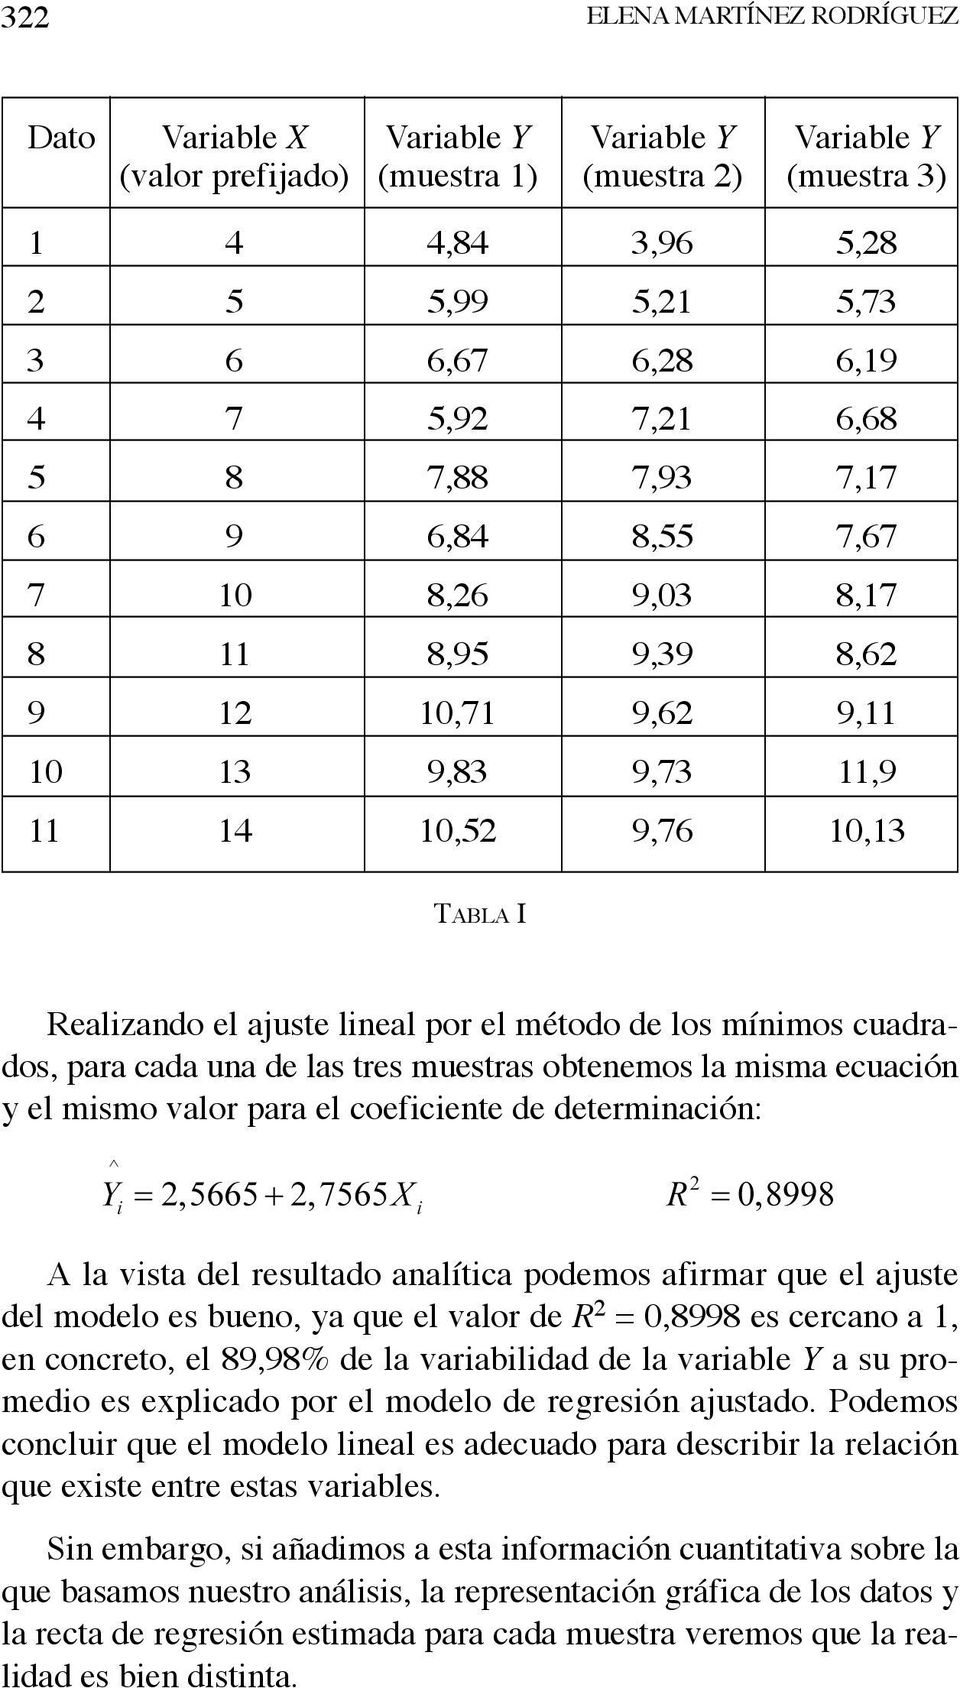 método de los mínimos cuadrados, para cada una de las tres muestras obtenemos la misma ecuación y el mismo valor para el coeficiente de determinación: A la vista del resultado analítica podemos